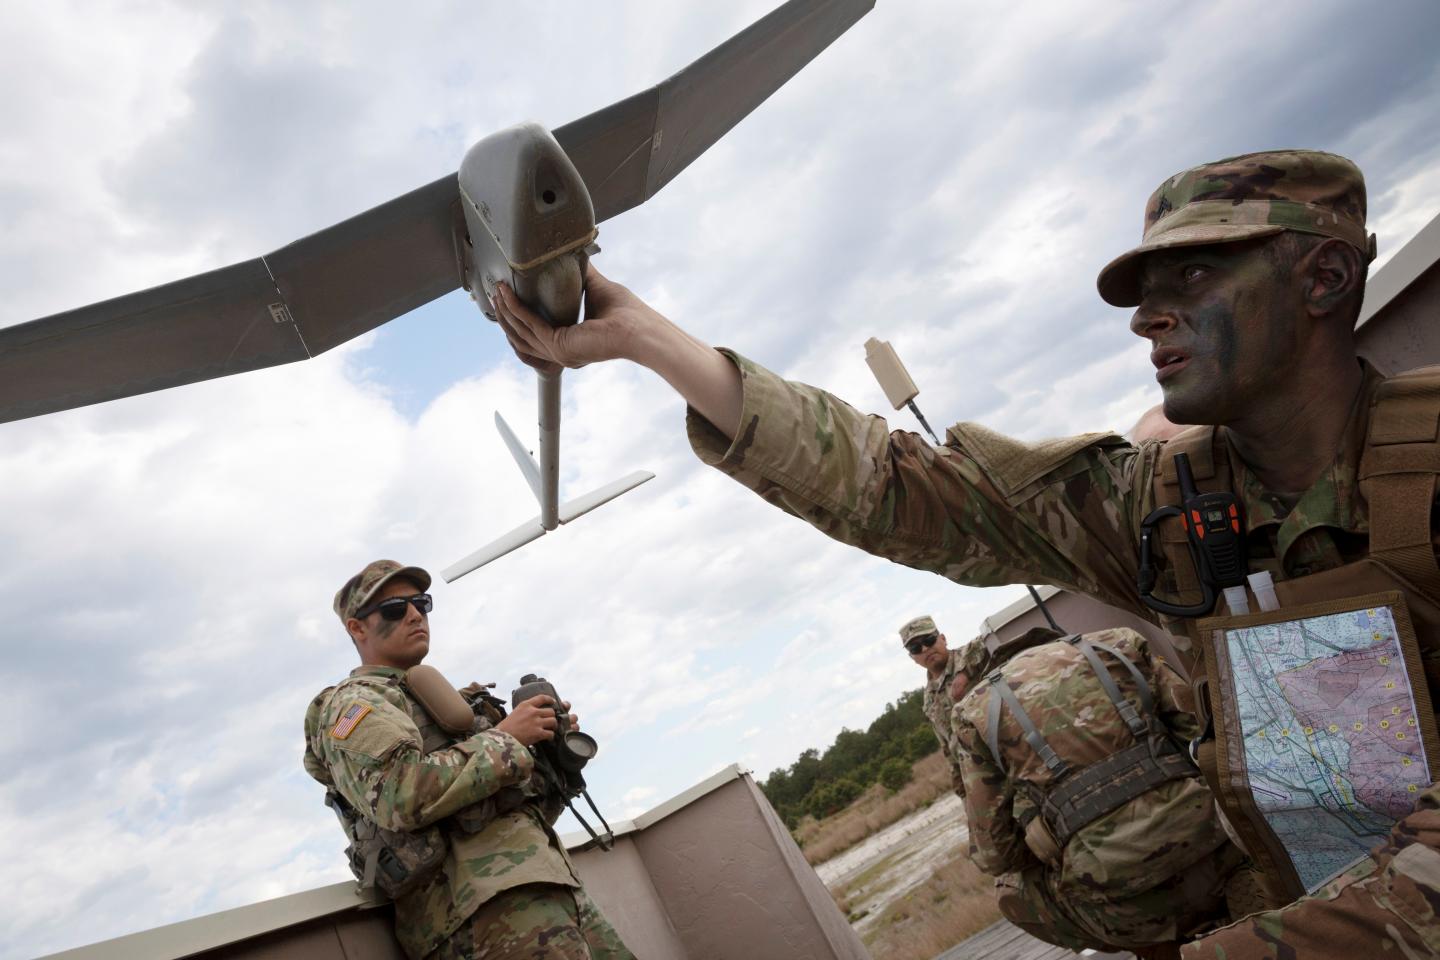 ASV militārpersonas ar dronu